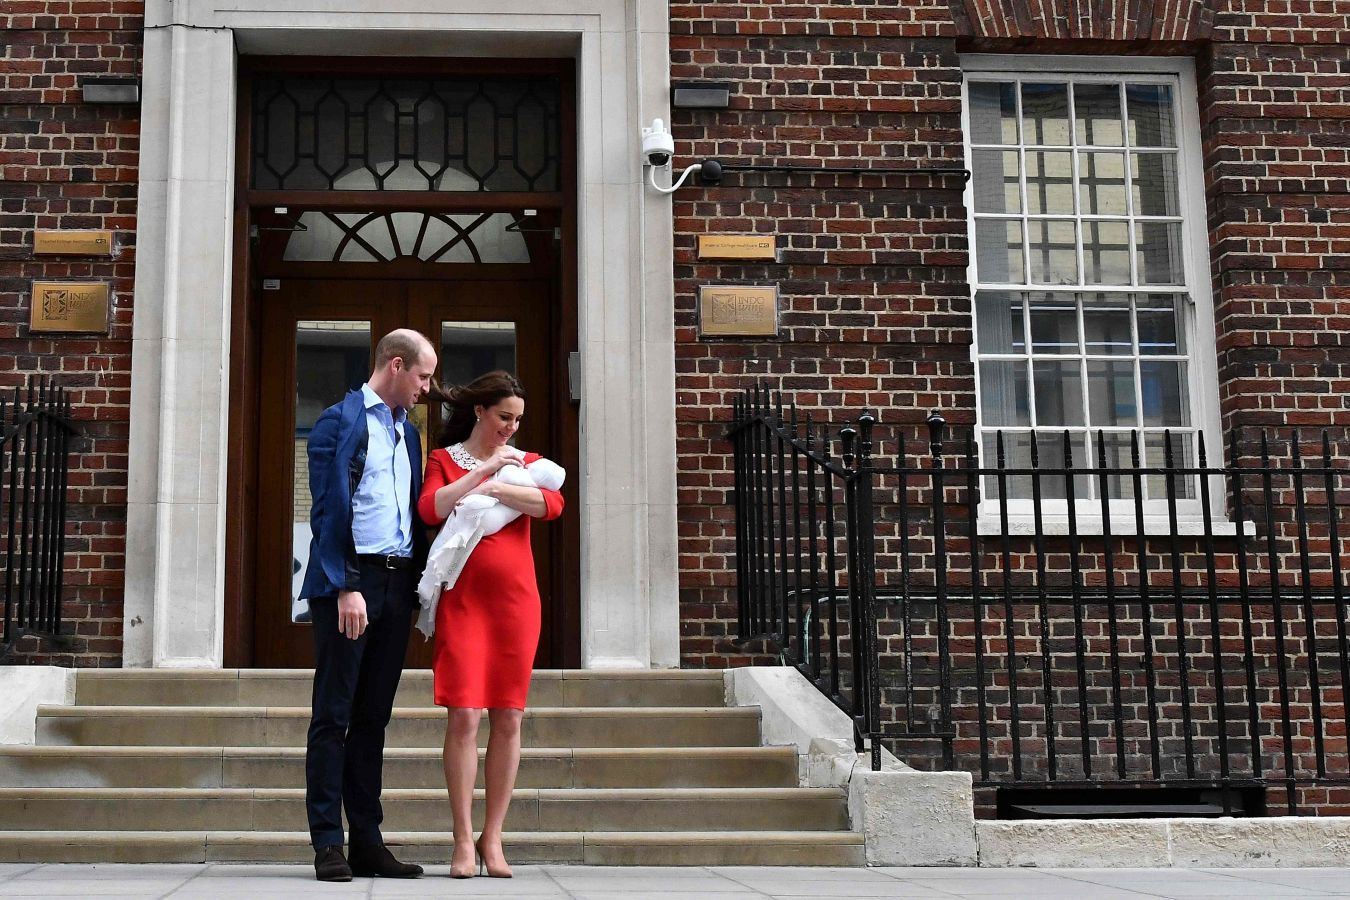 La tienda donostiarra Irulea viste en su primera aparición pública al nuevo miembro de la familia real británica